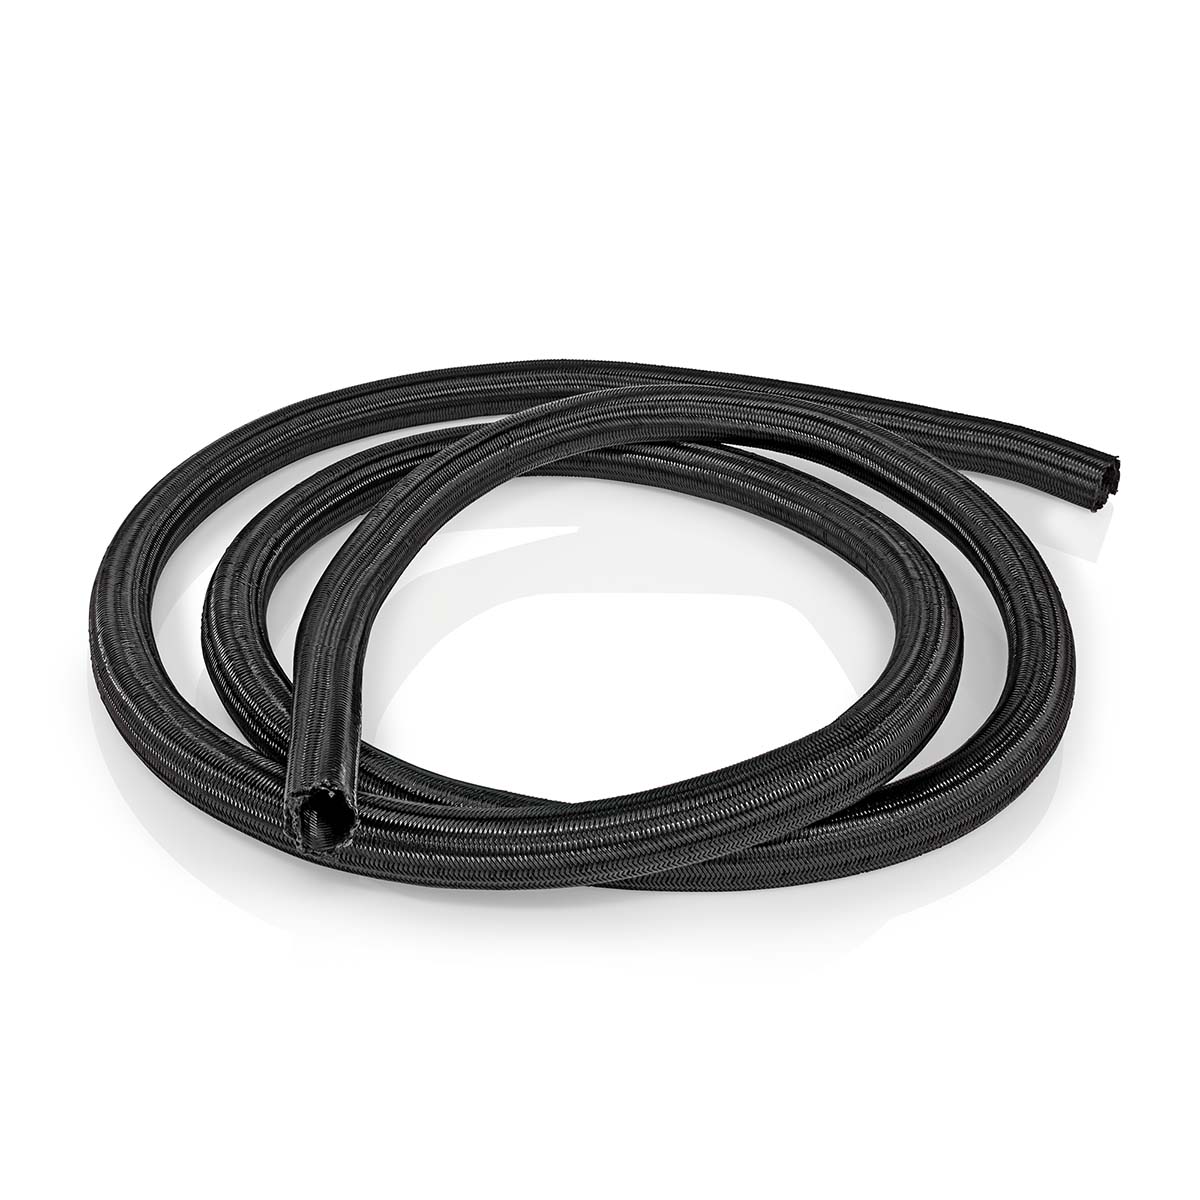 Cable management | Pouzdro | 2.00 m | 1 kusů | Maximální tloušťka kabelu: 15 mm | Nylon | Černá